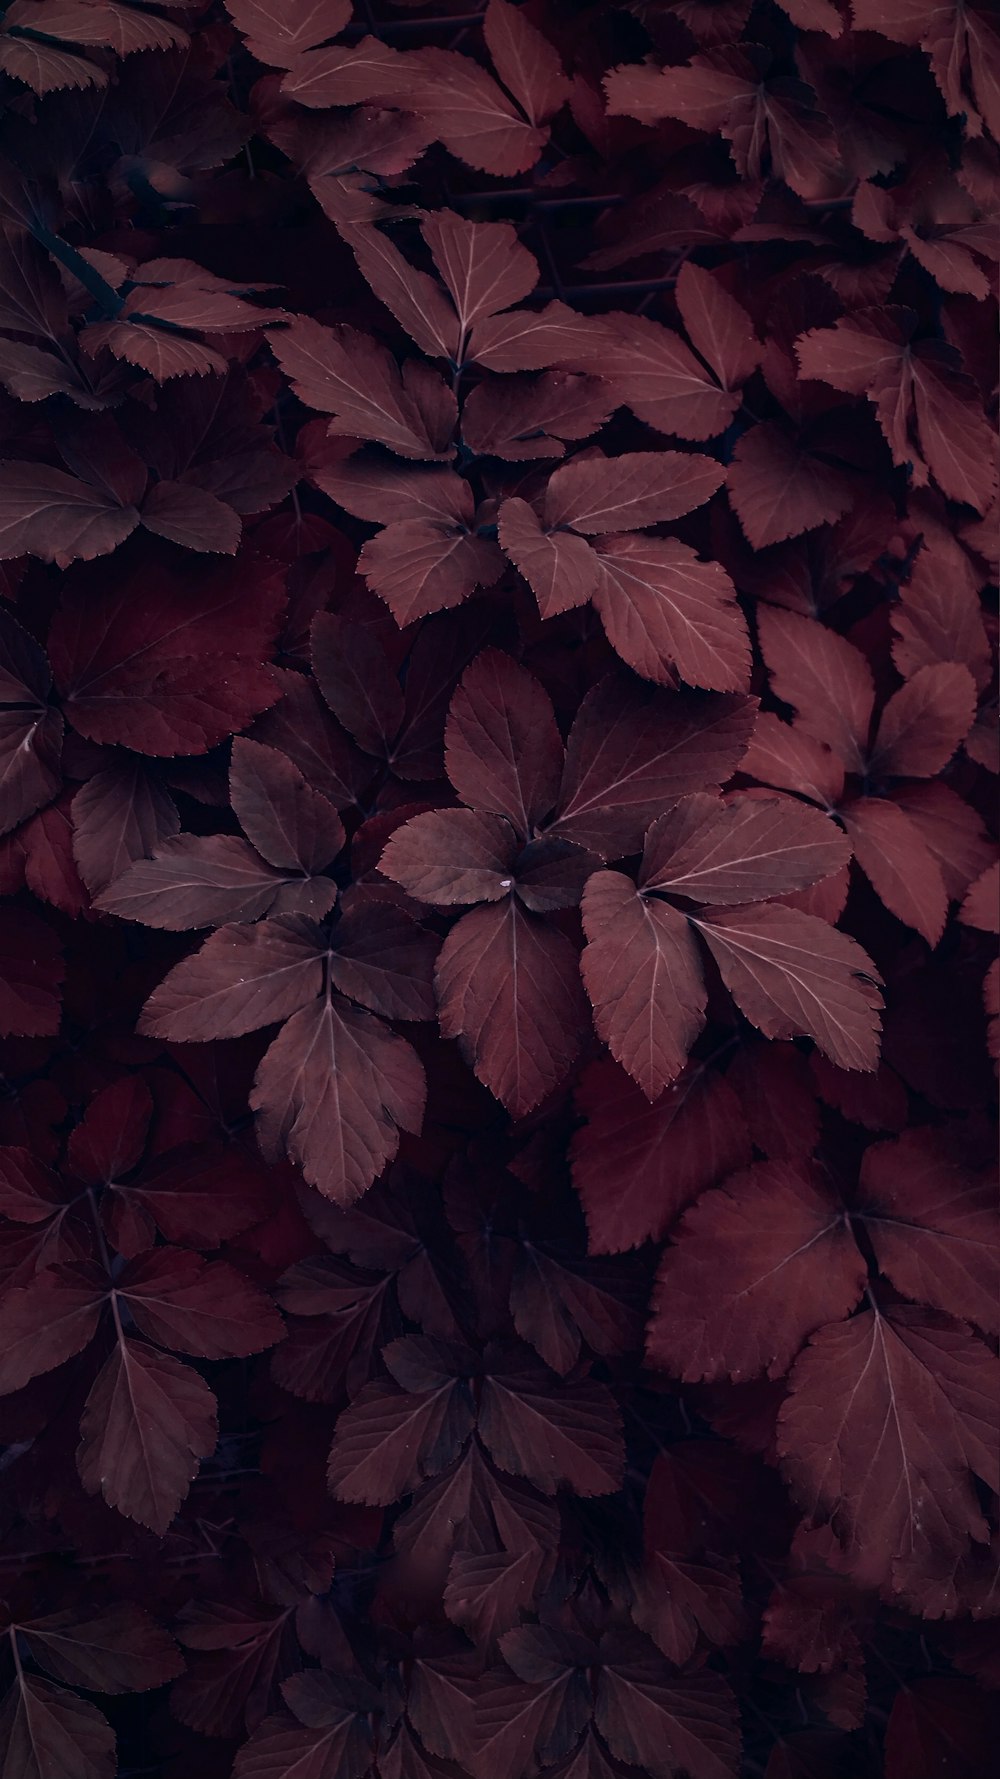 feuilles rouges et brunes sur le sol